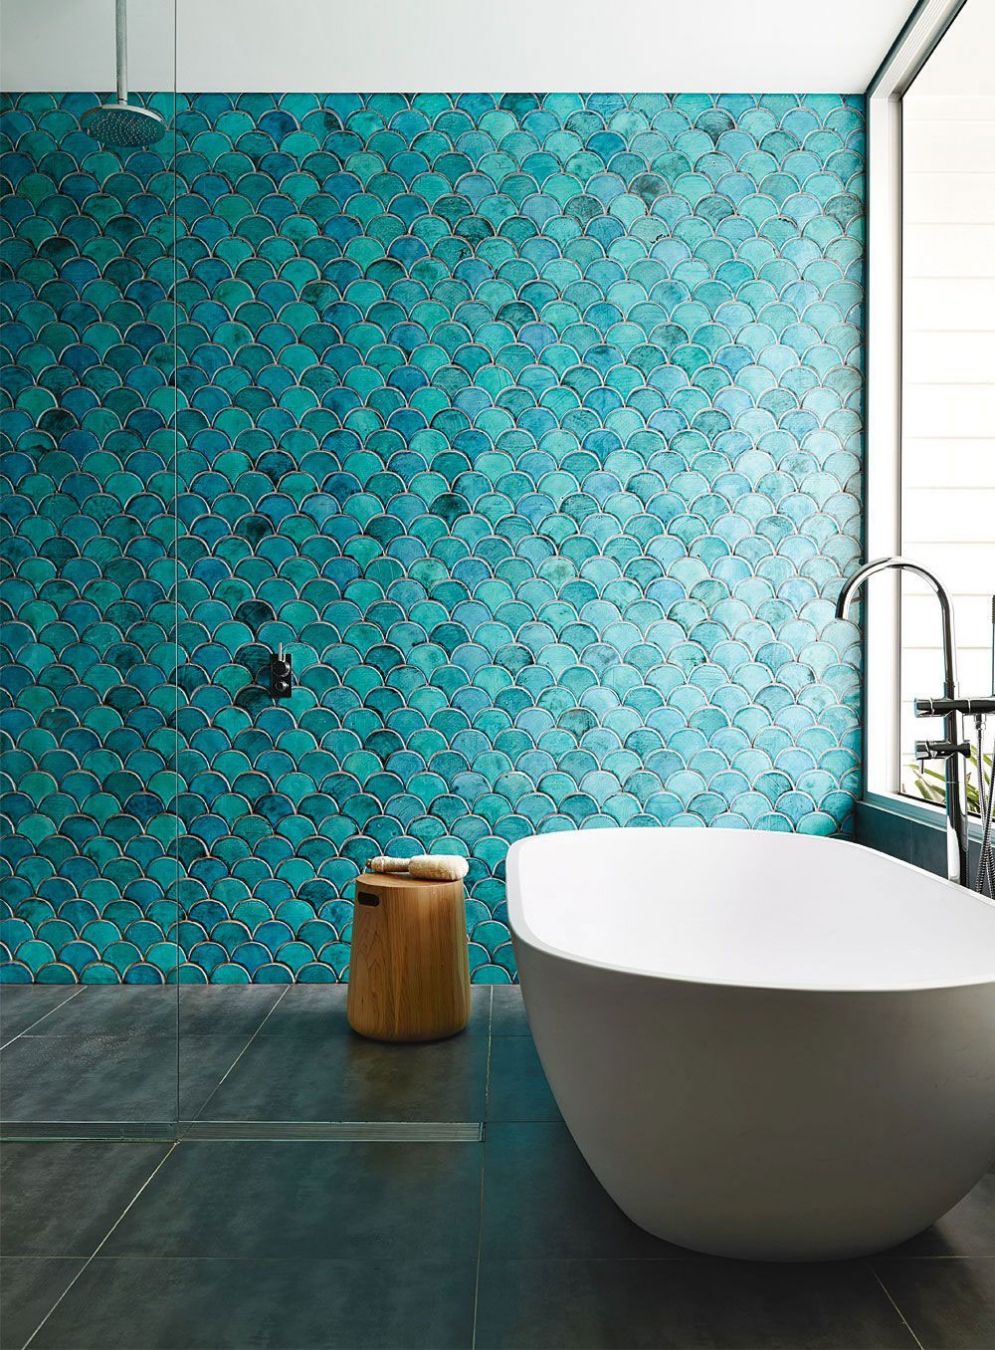 Минималистический дизайн ванной комнаты поддержан с помощью чешуйчатой плитки цвета лазури во всю стену